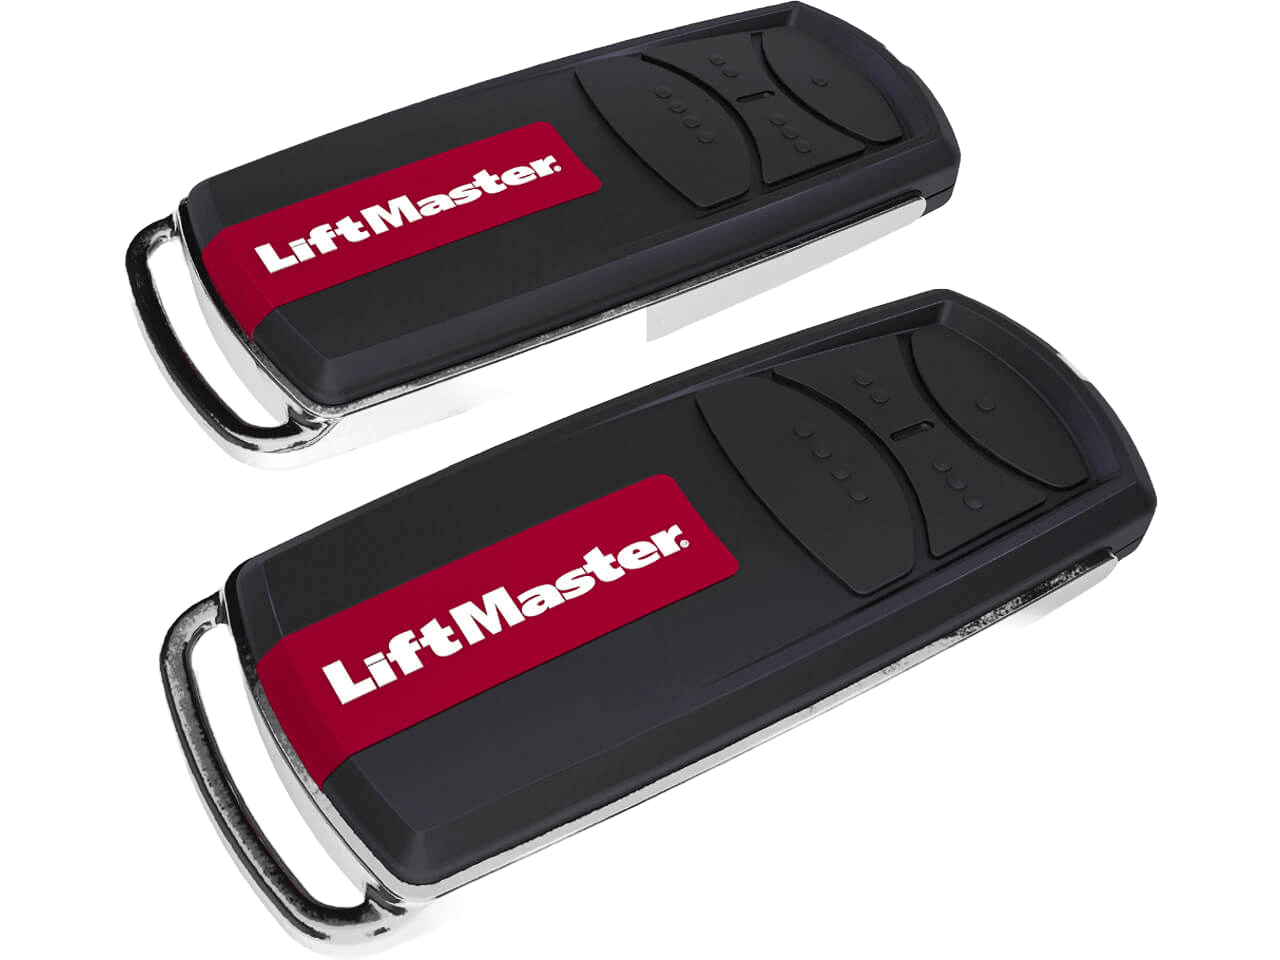 LiftMaster Garage Door Opener Set LM60EVF up to 100 kg Door Weight with C-Rail